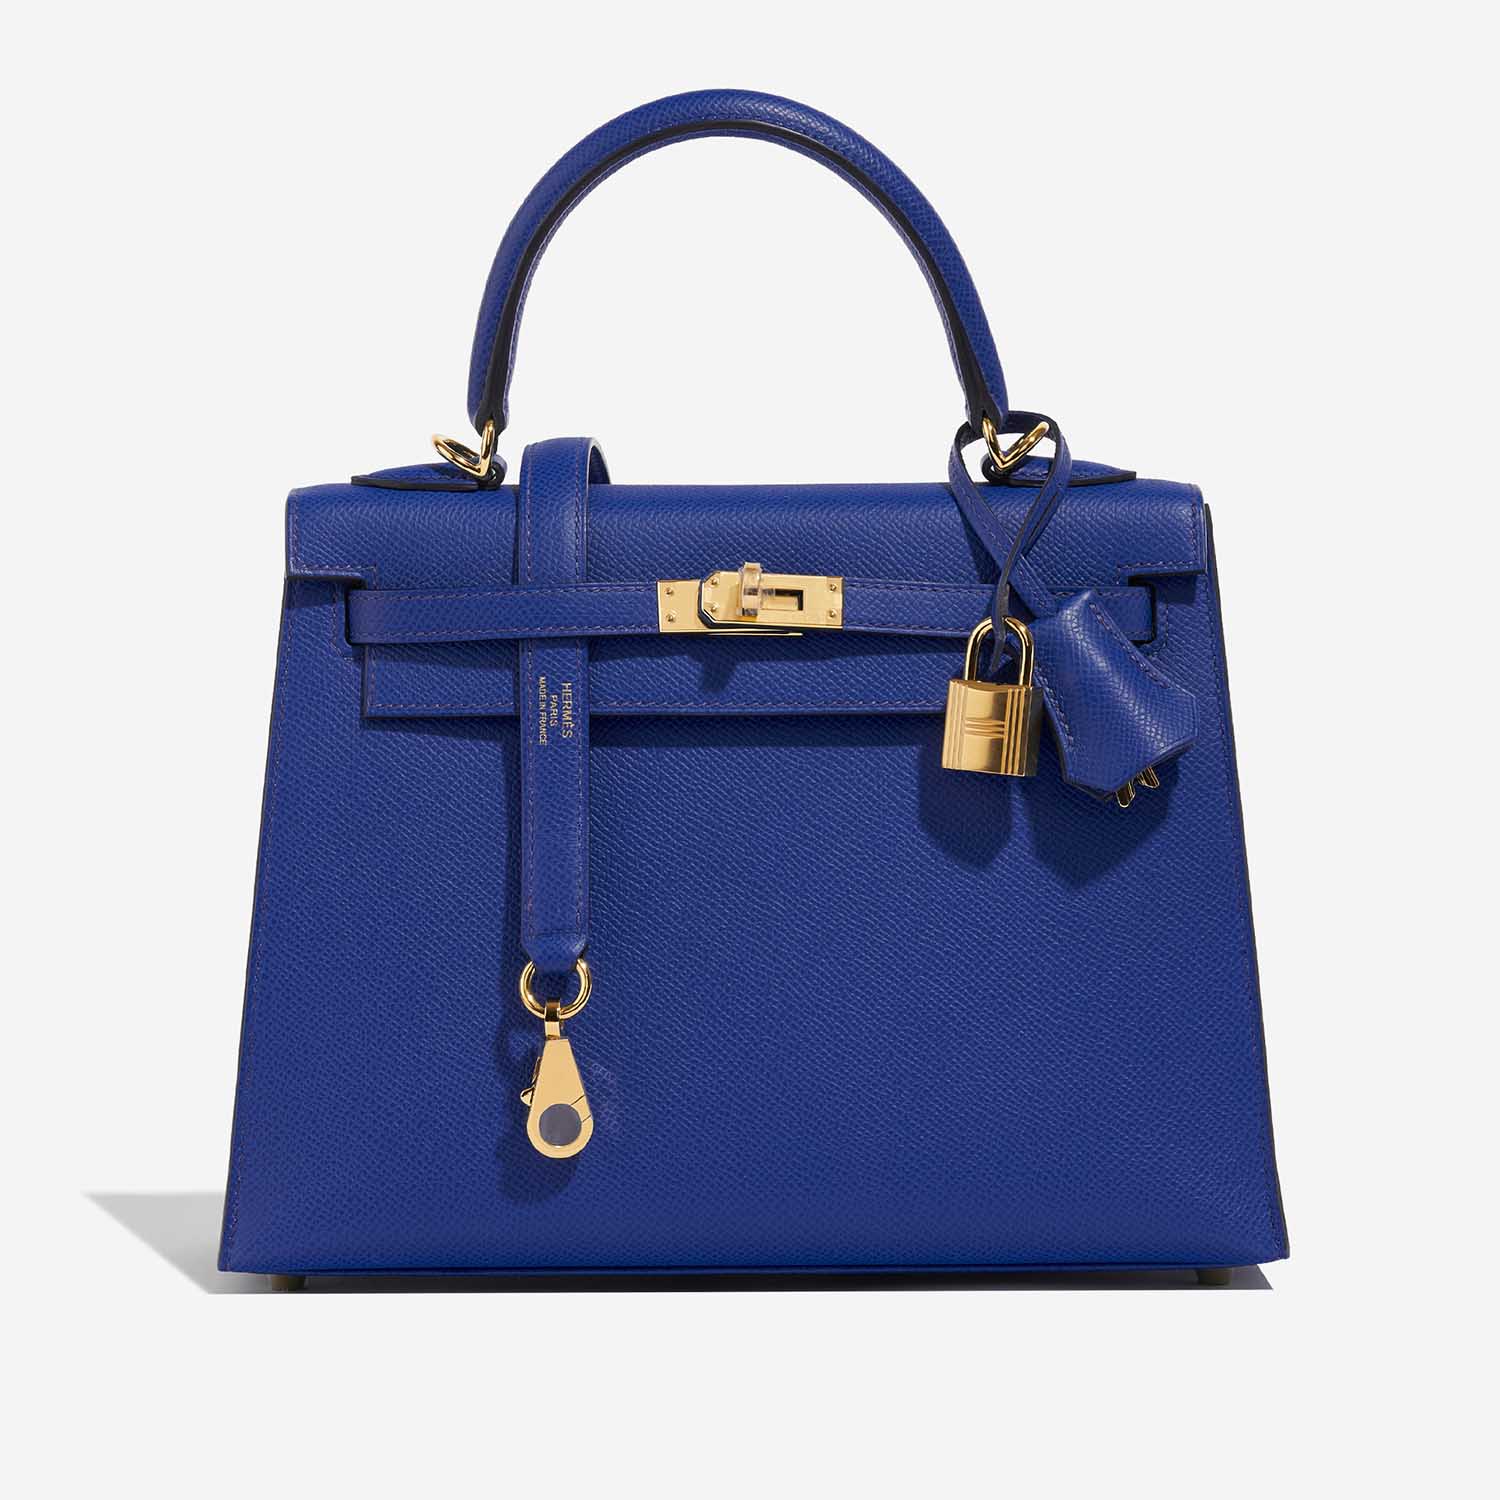 Hermès Kelly 25 BleuRoyal Front | Verkaufen Sie Ihre Designertasche auf Saclab.com